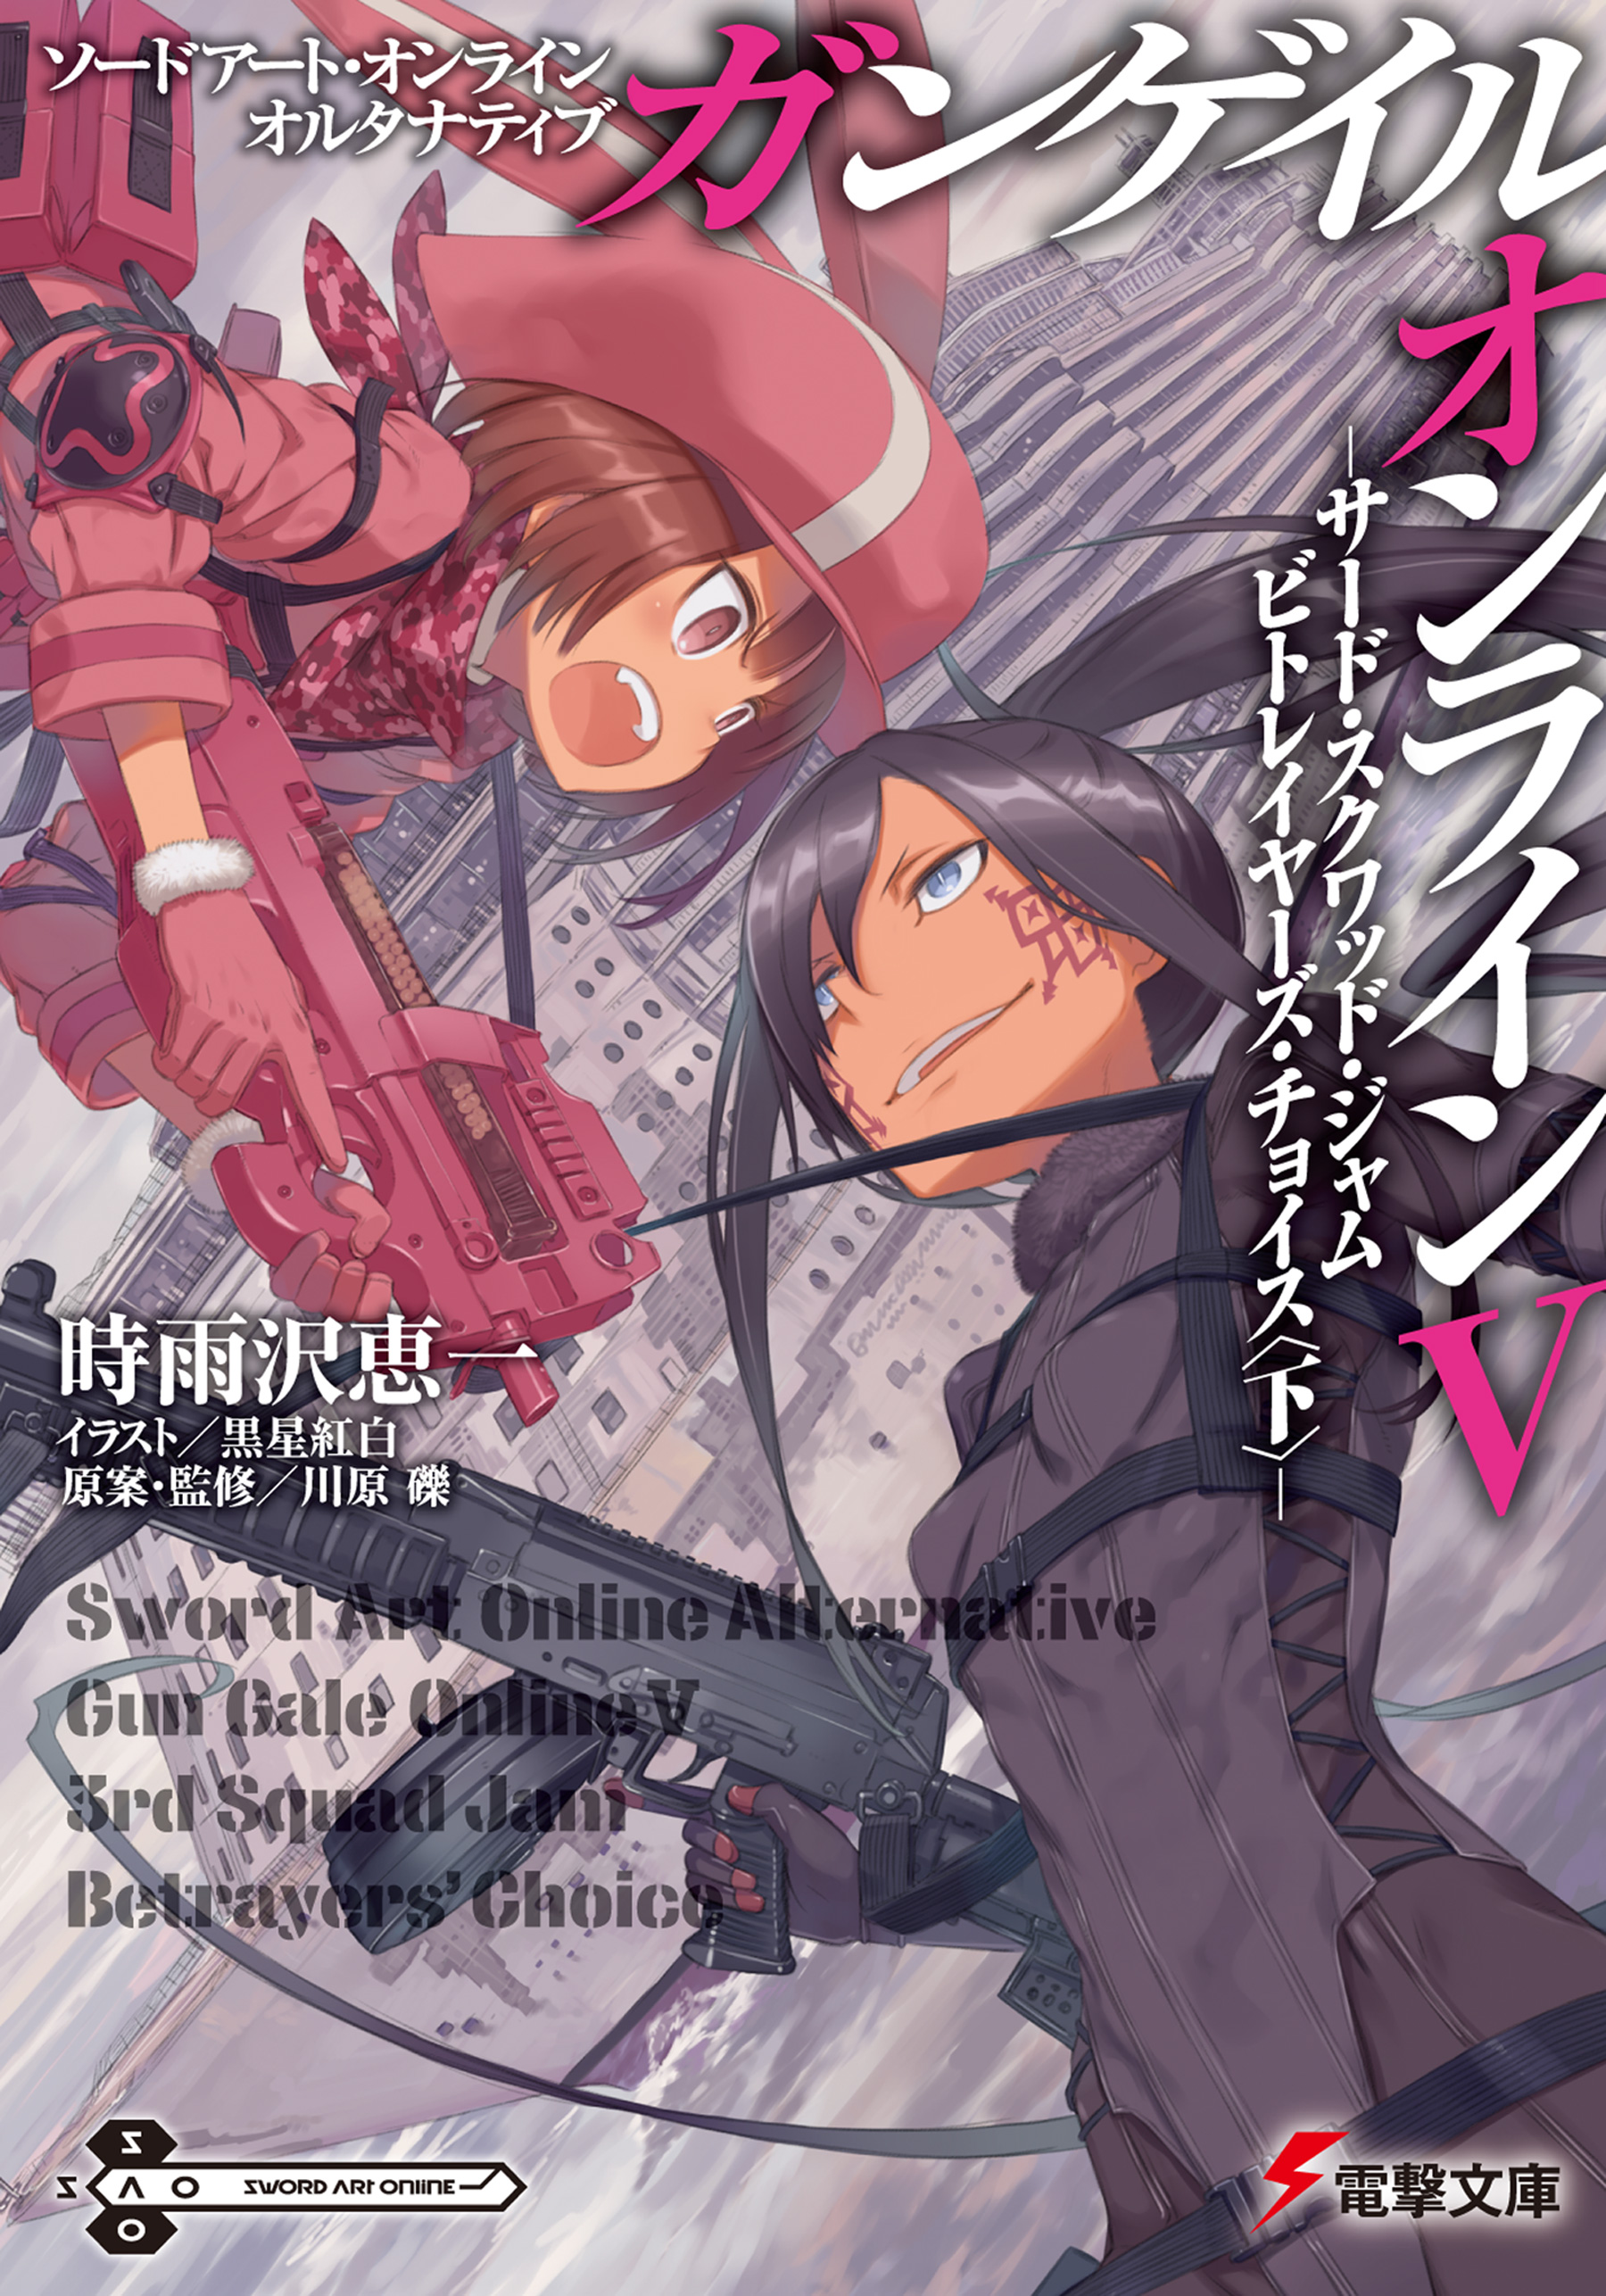 Sword Art Online Alternative Gun Gale Online 13 Novel Anime Japanese Book